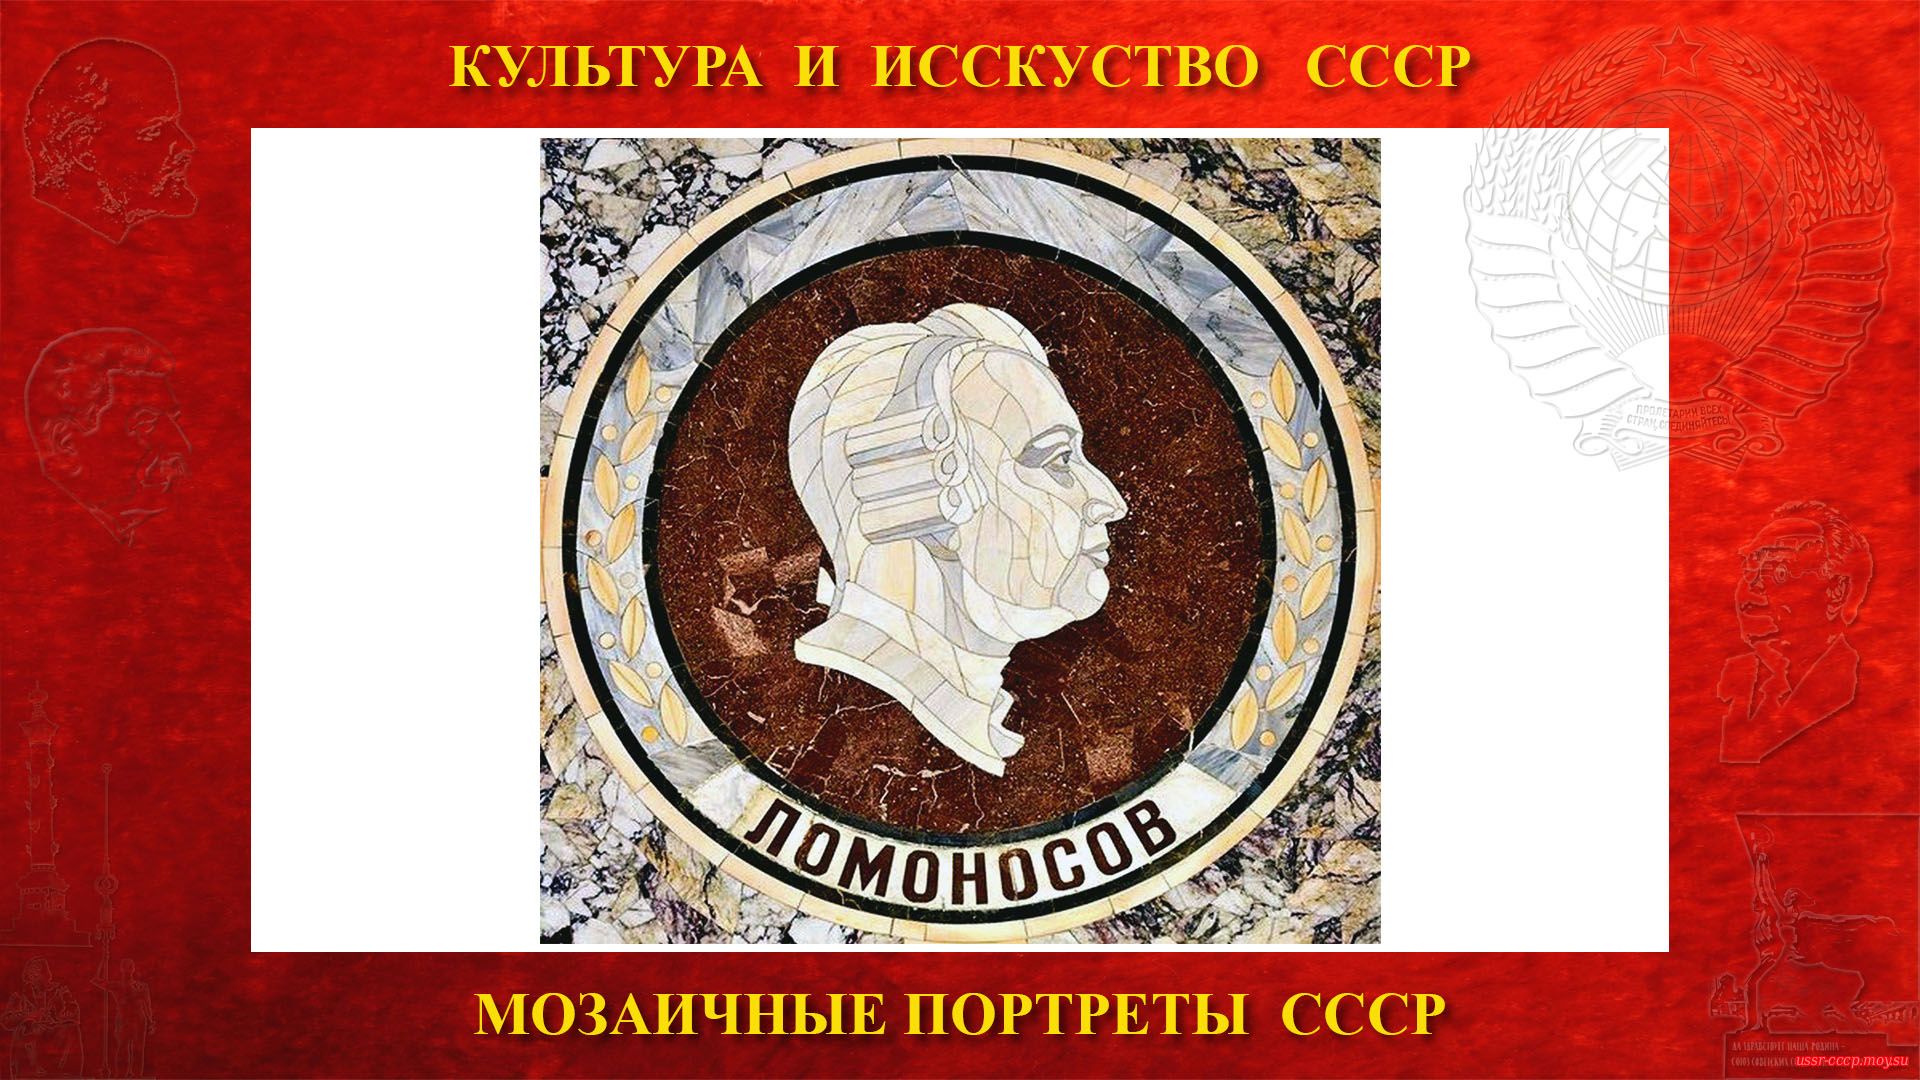 Мозаичный портрет Ломоносову М.В. на Ленинских горах в ГЗ МГУ (Москва 1953) (повествование)